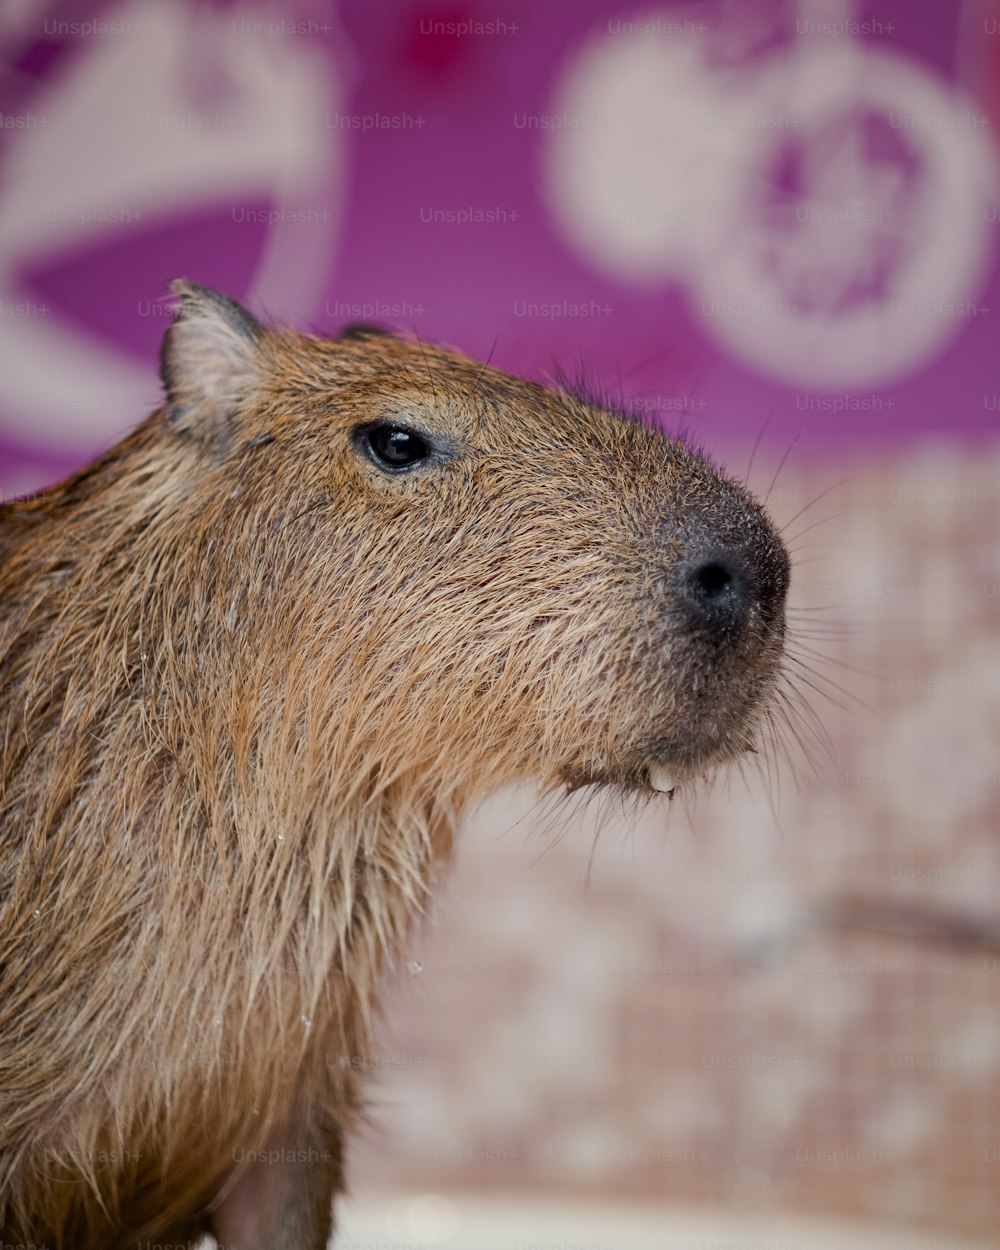 Un primo piano di un capibara in una vasca da bagno